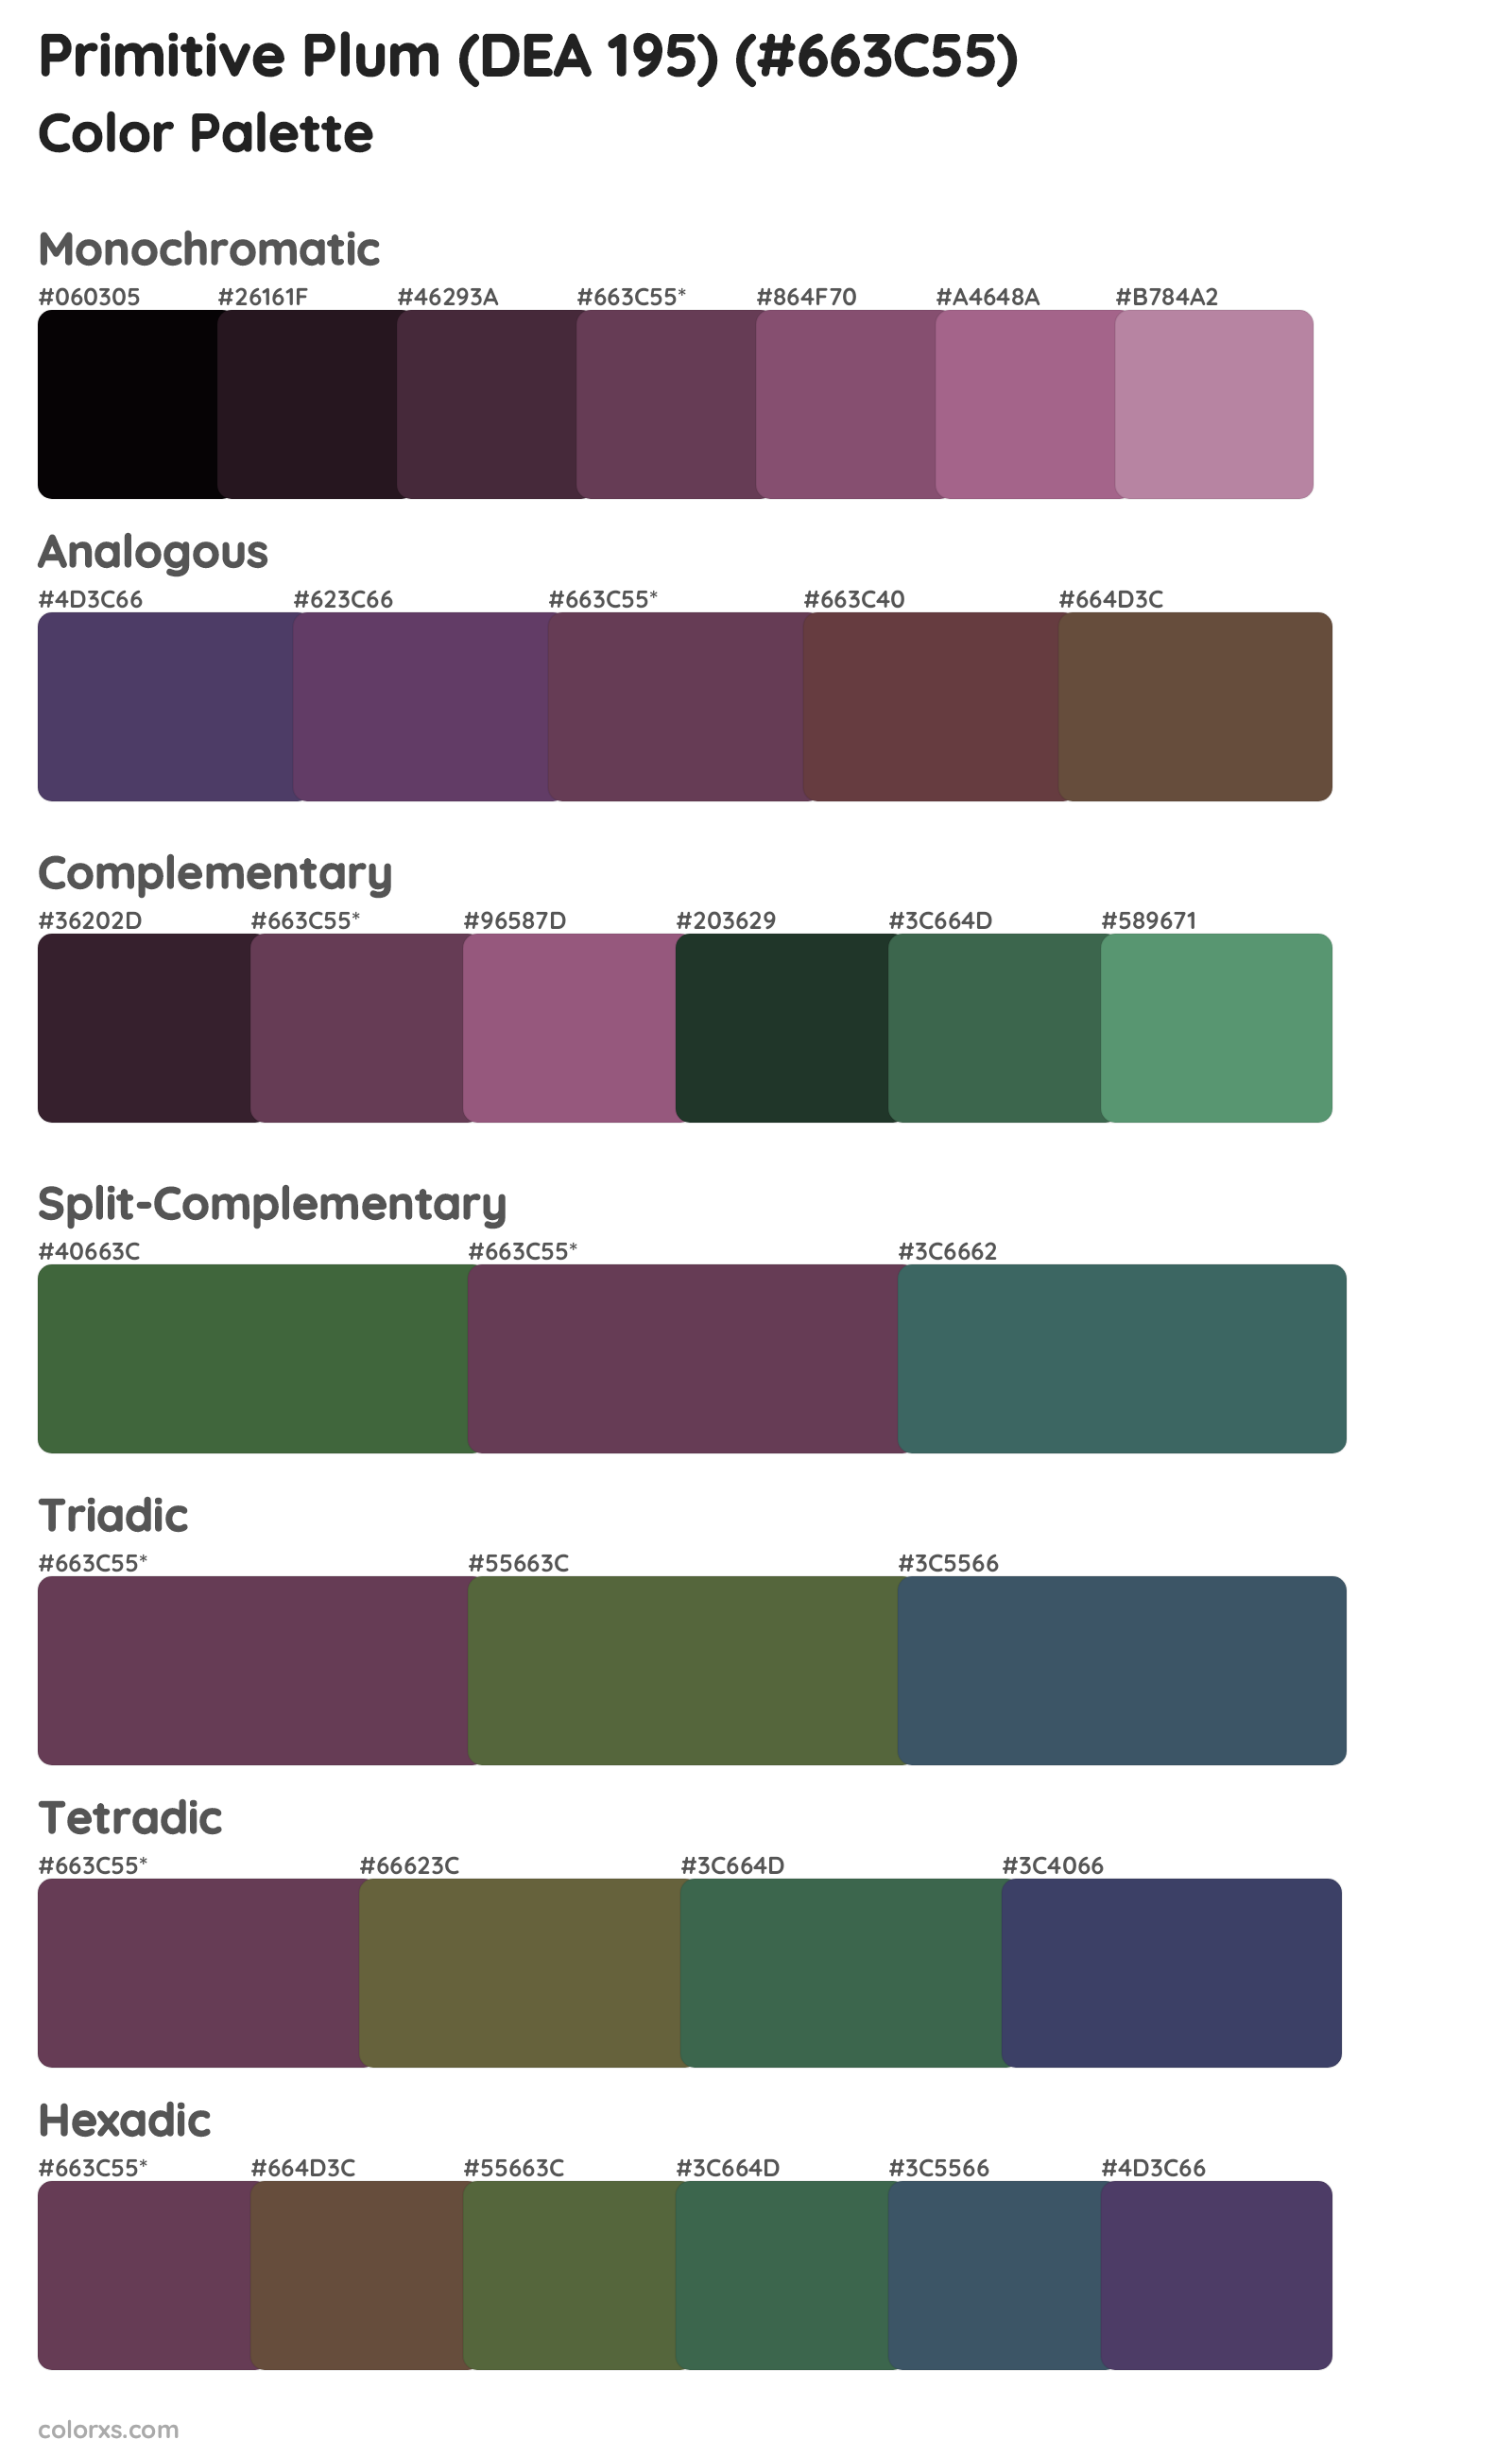 Primitive Plum (DEA 195) Color Scheme Palettes